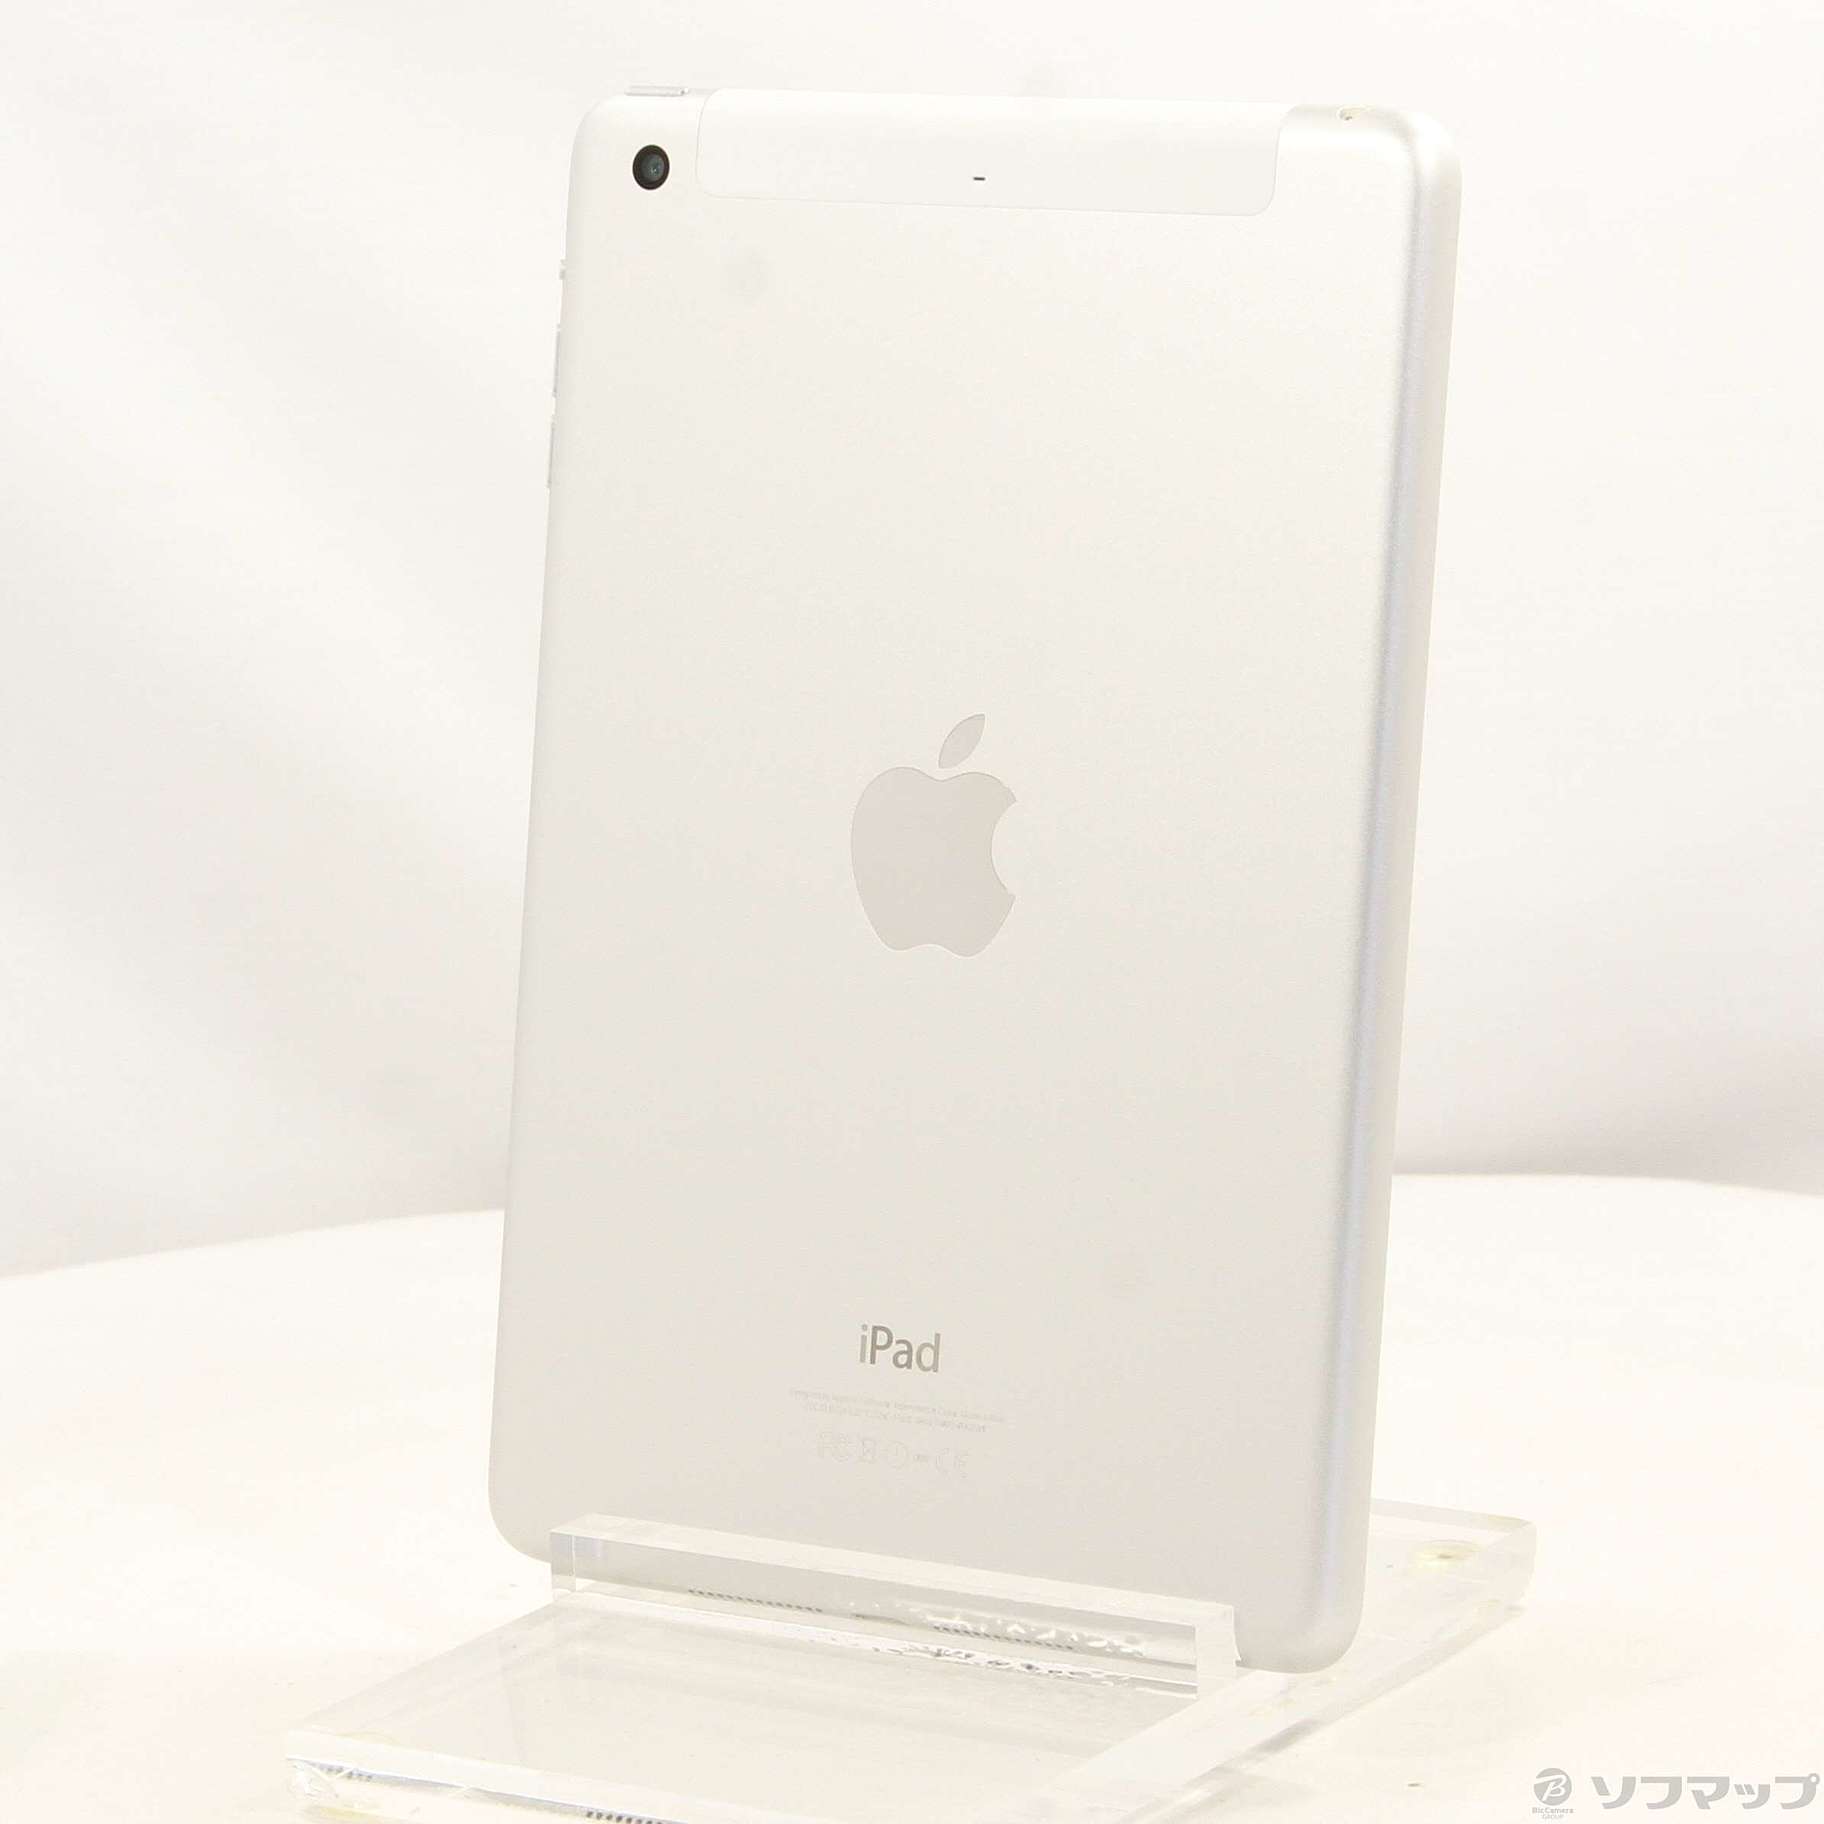 爆買い大人気docomo NGHW2J/A iPad mini 3 Wi-Fi+Cellular 16GB シルバー do iPad本体